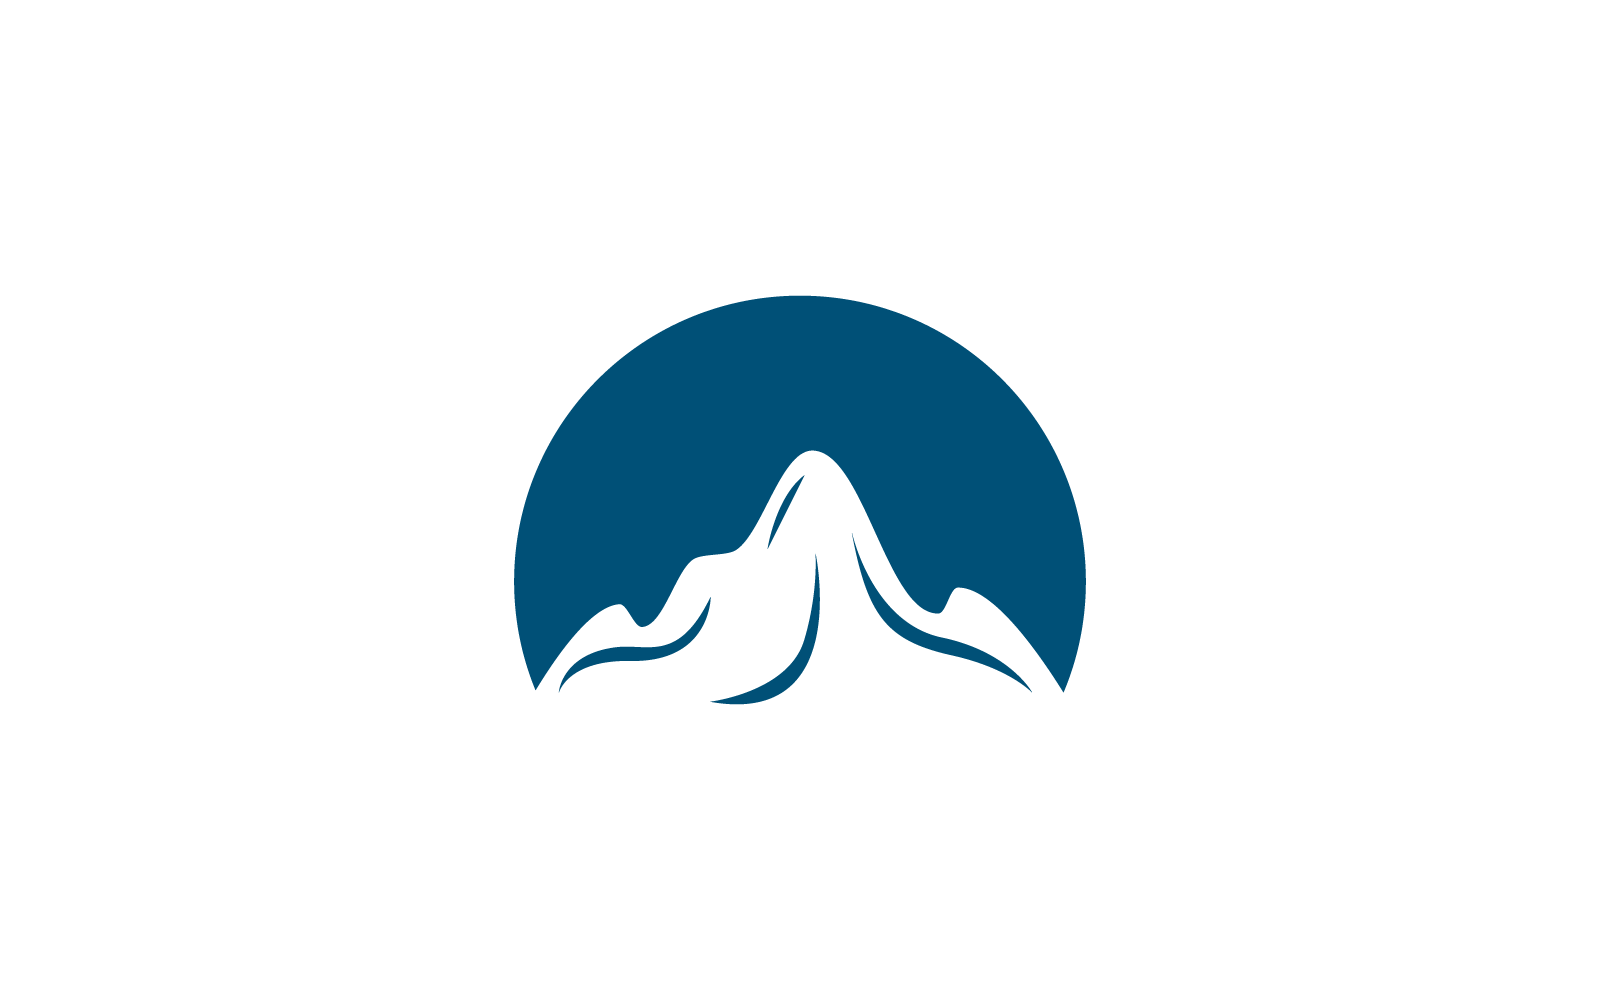 Mountain illustration flat design icon vector